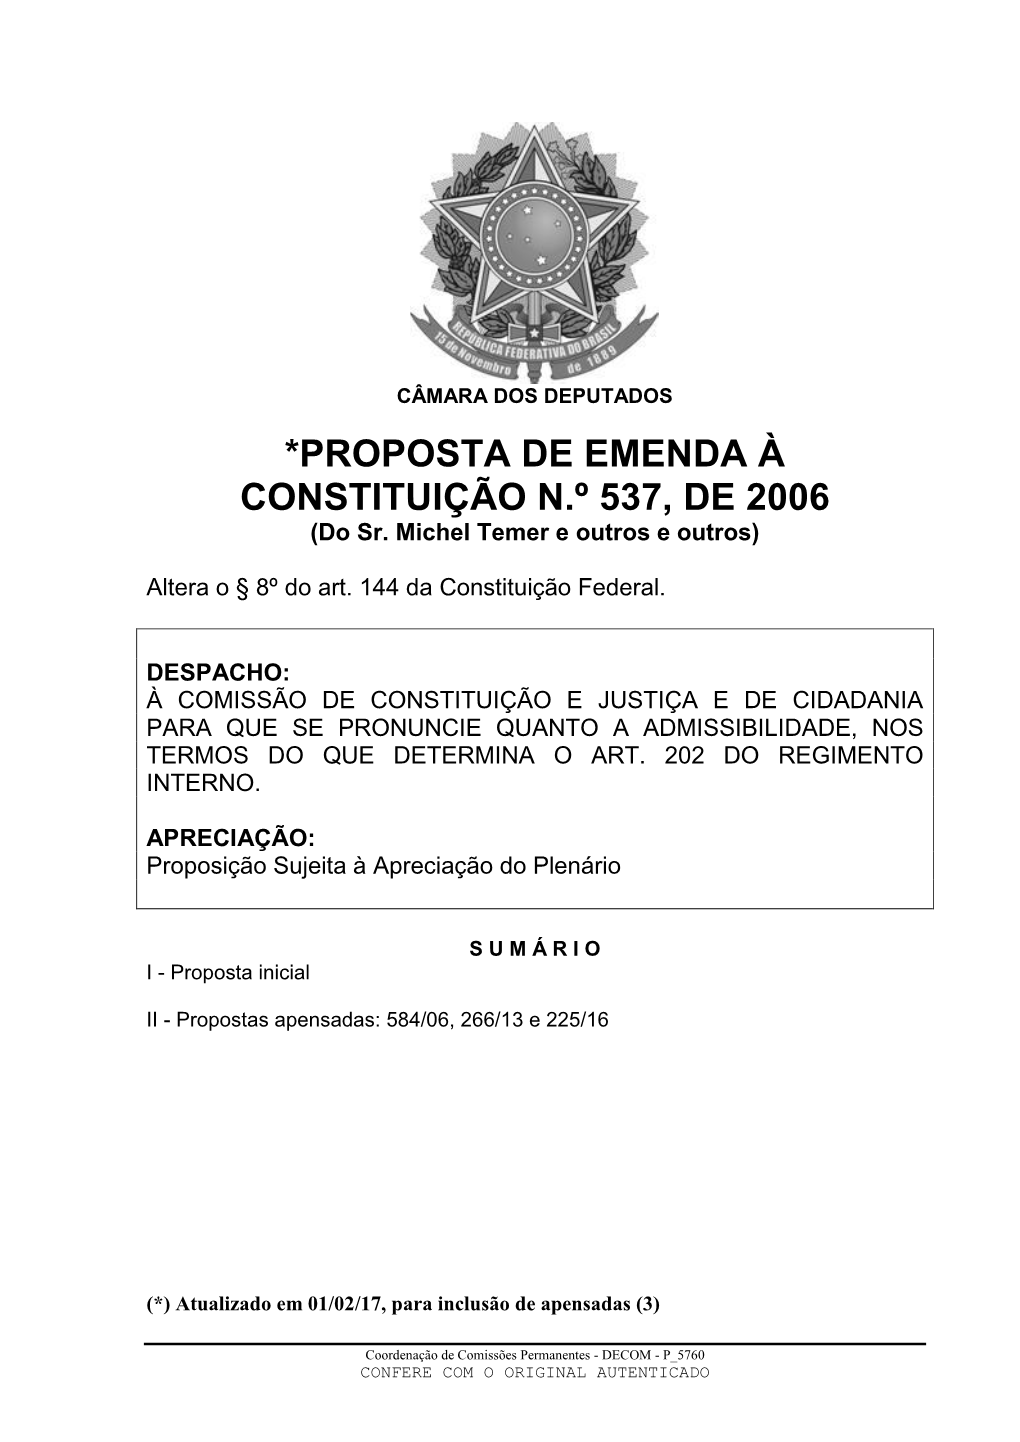 *PROPOSTA DE EMENDA À CONSTITUIÇÃO N.º 537, DE 2006 (Do Sr